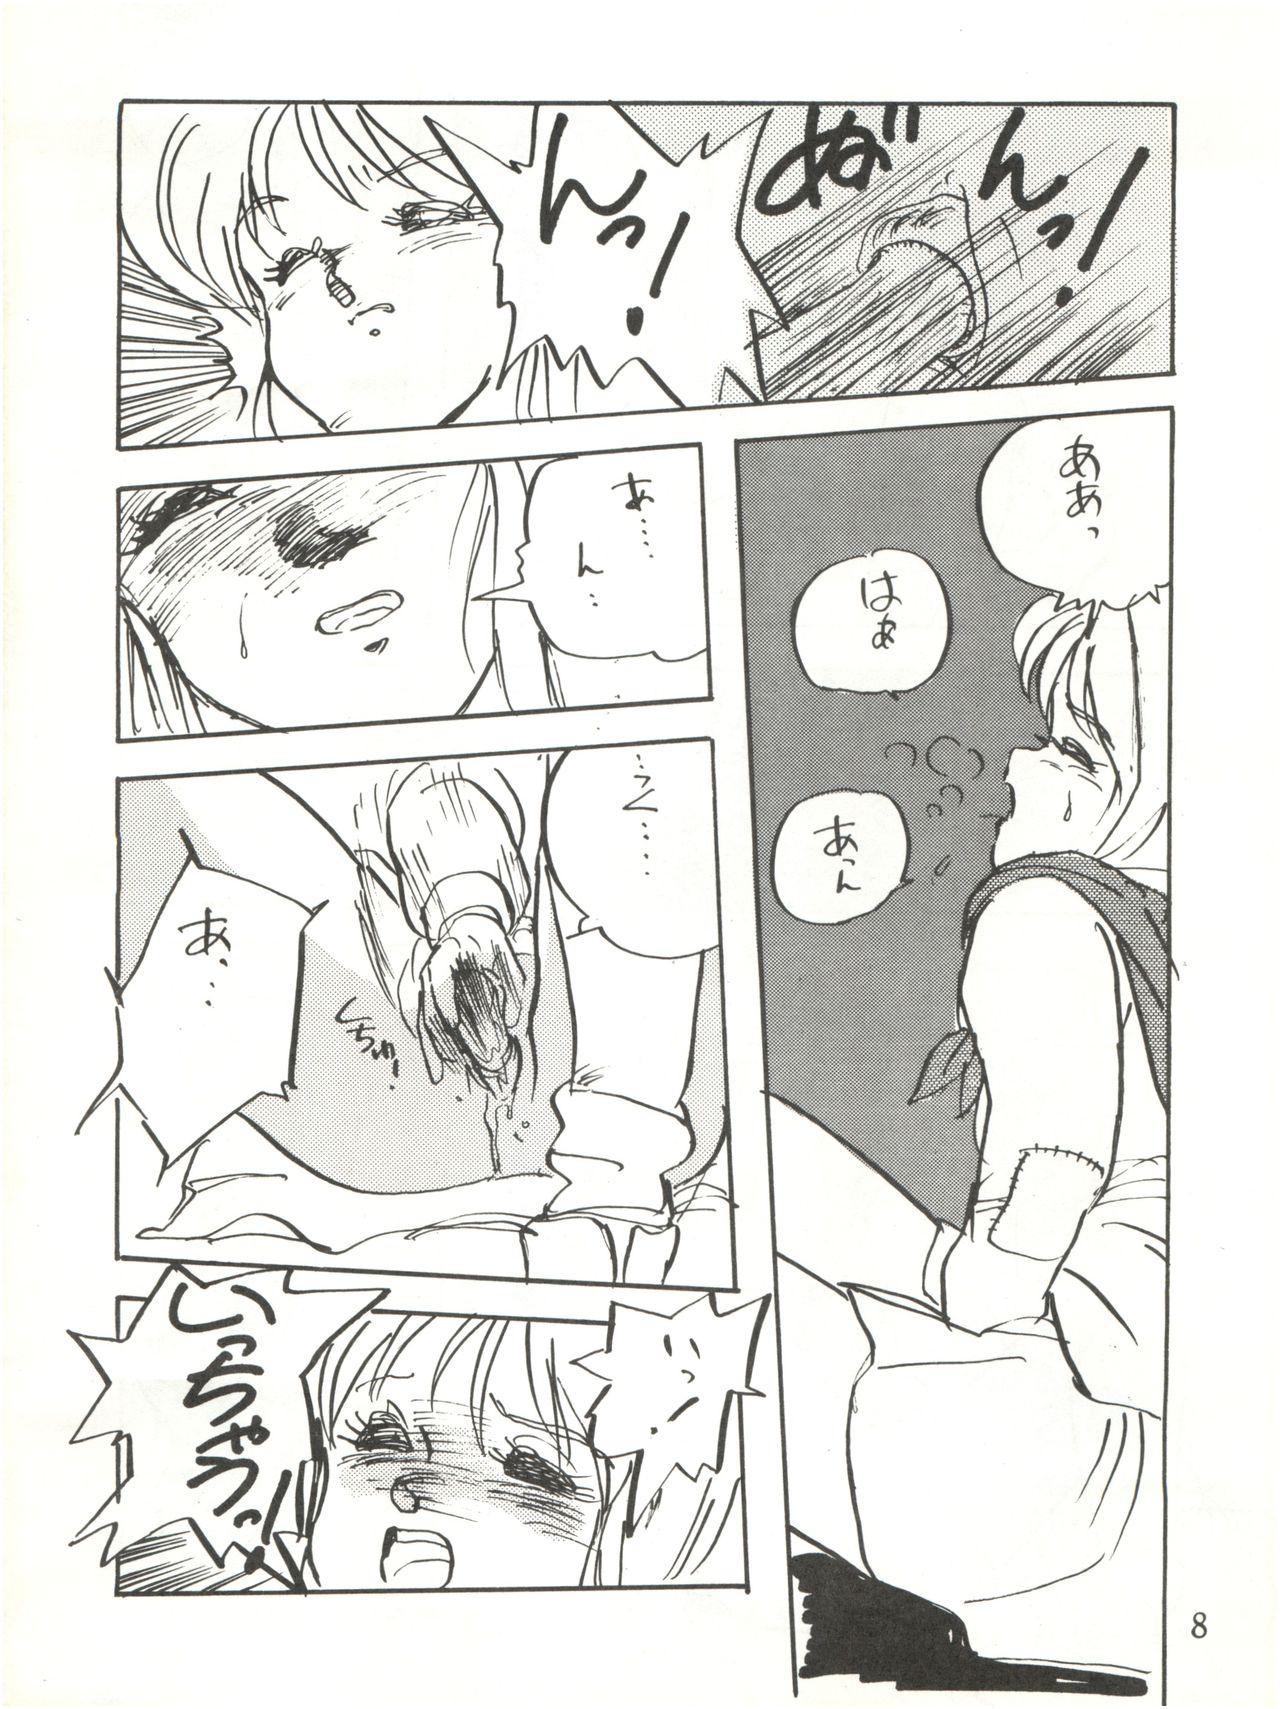 Gaystraight Waku Waku Elpeo Land PII - Gundam zz Anal Fuck - Page 8